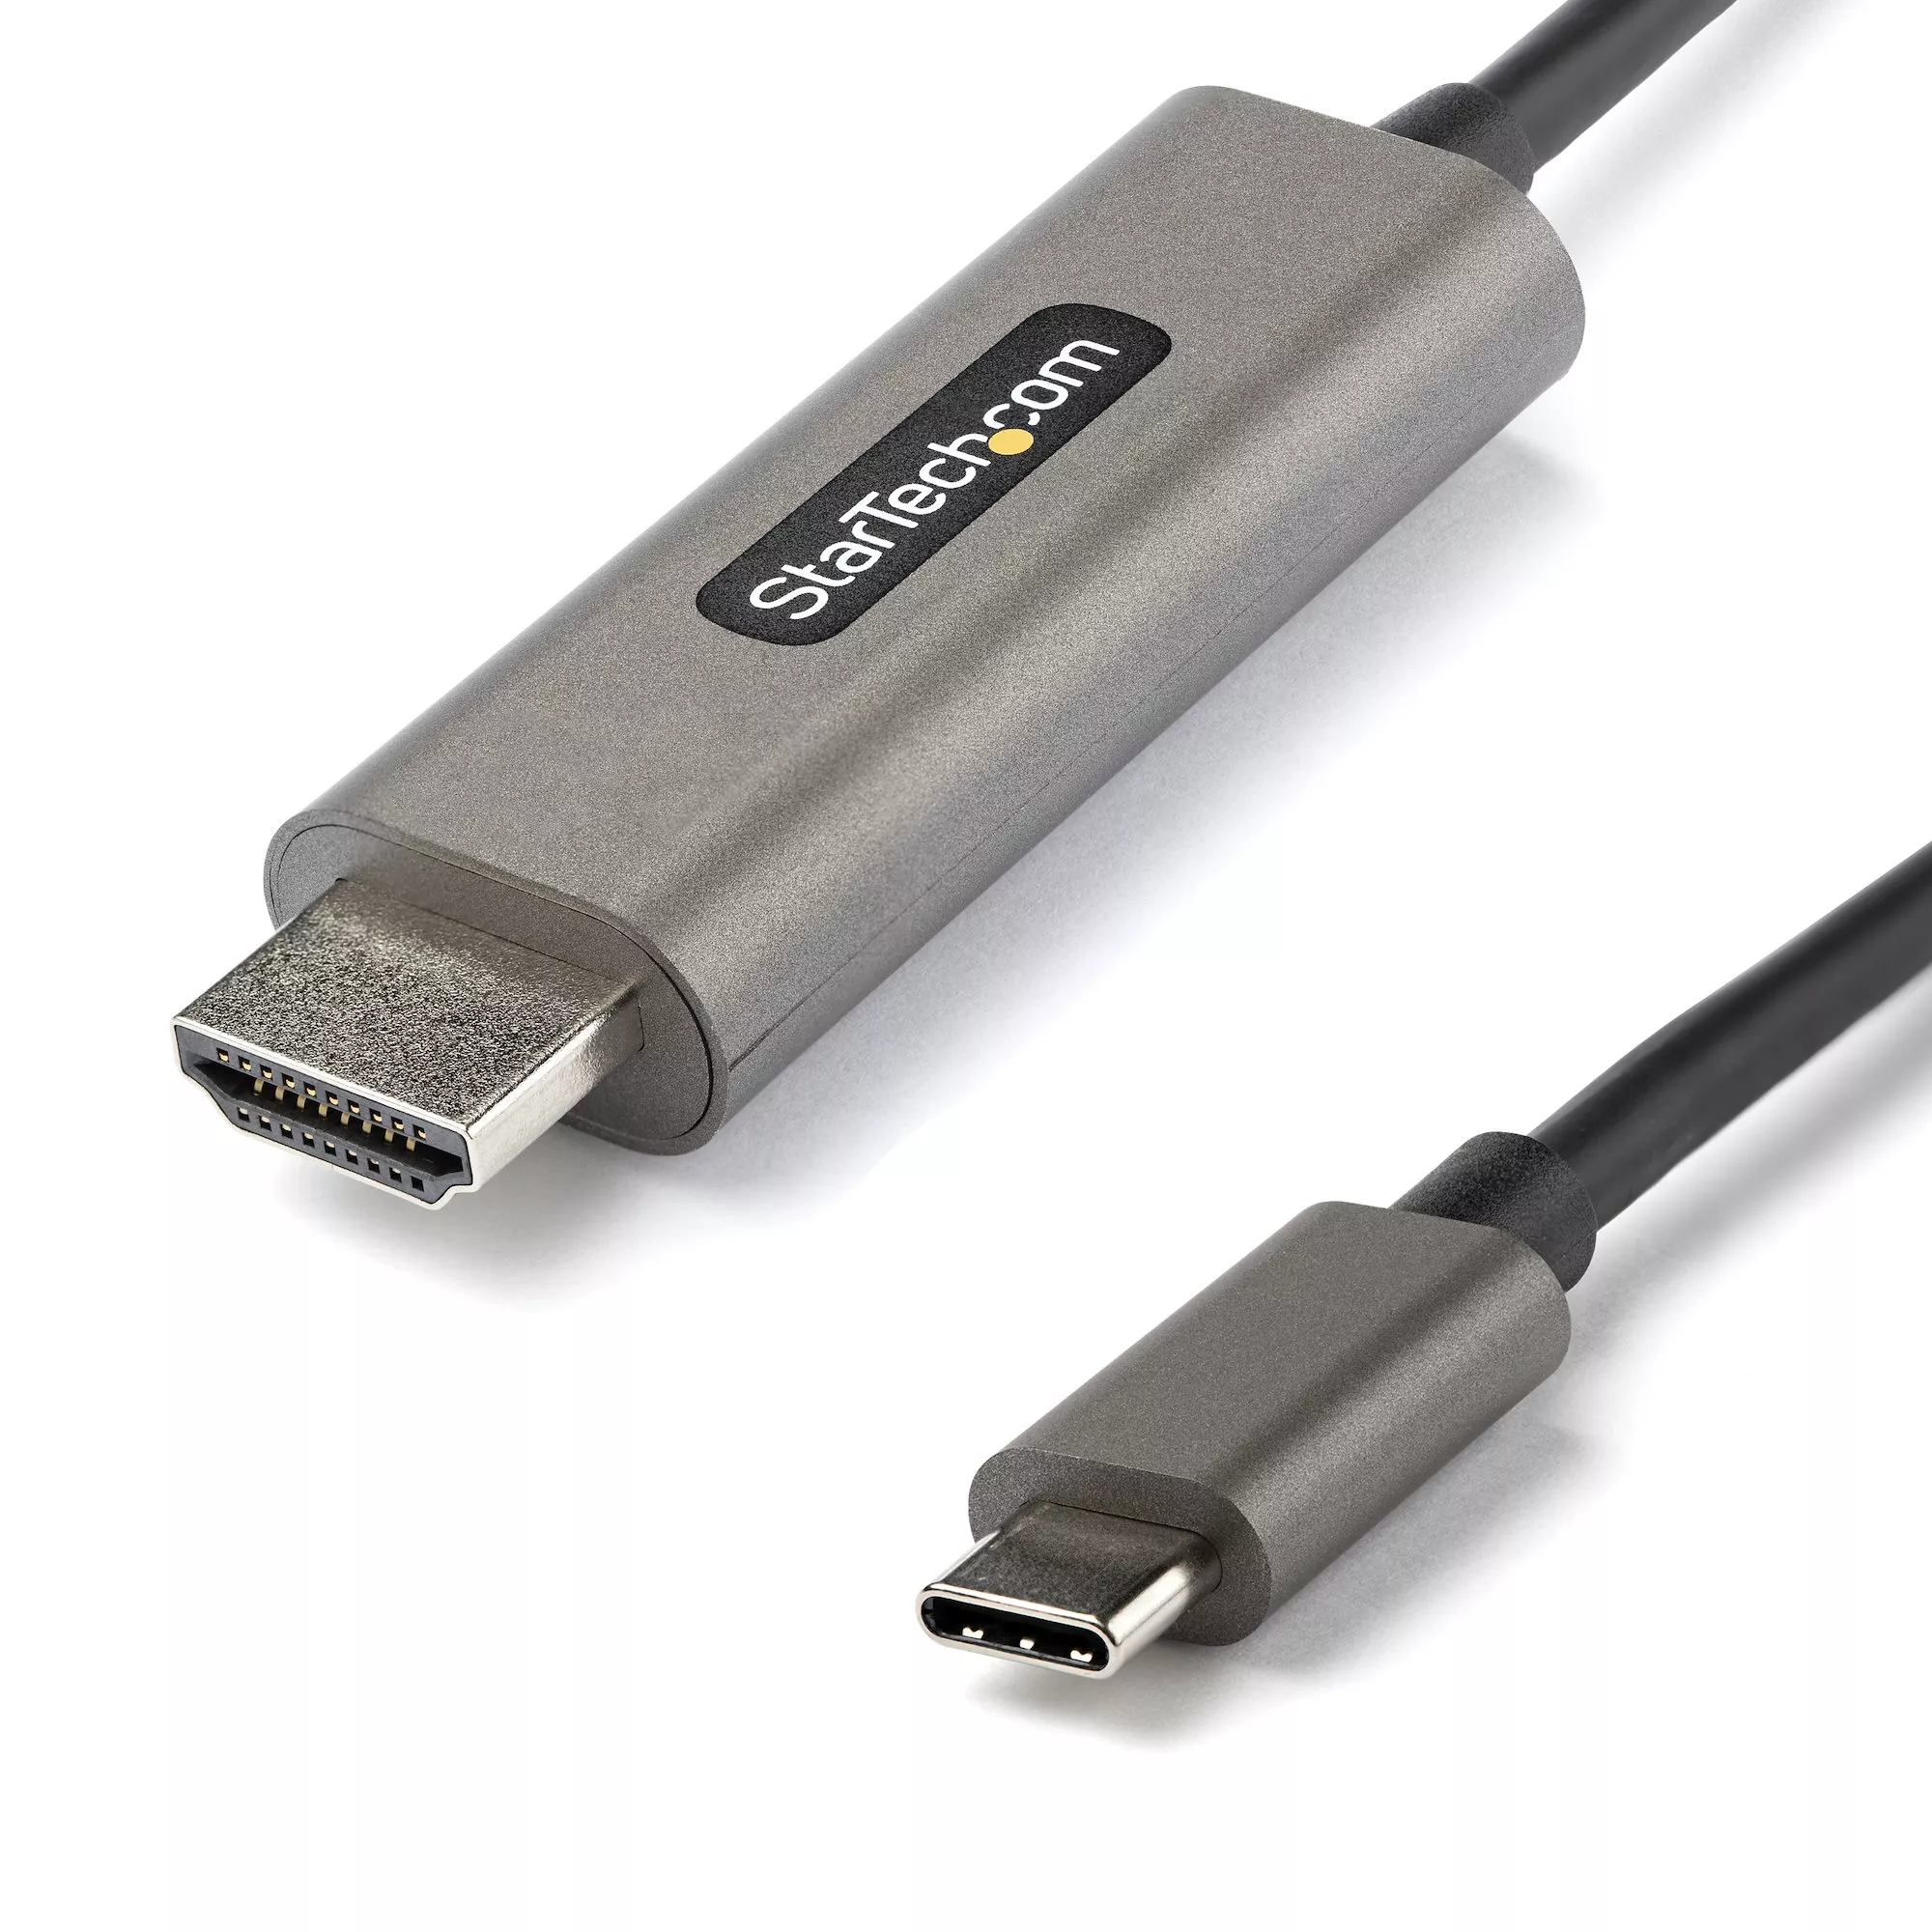 Revendeur officiel Câble HDMI StarTech.com Câble USB C vers HDMI 4K 60Hz HDR10 5m